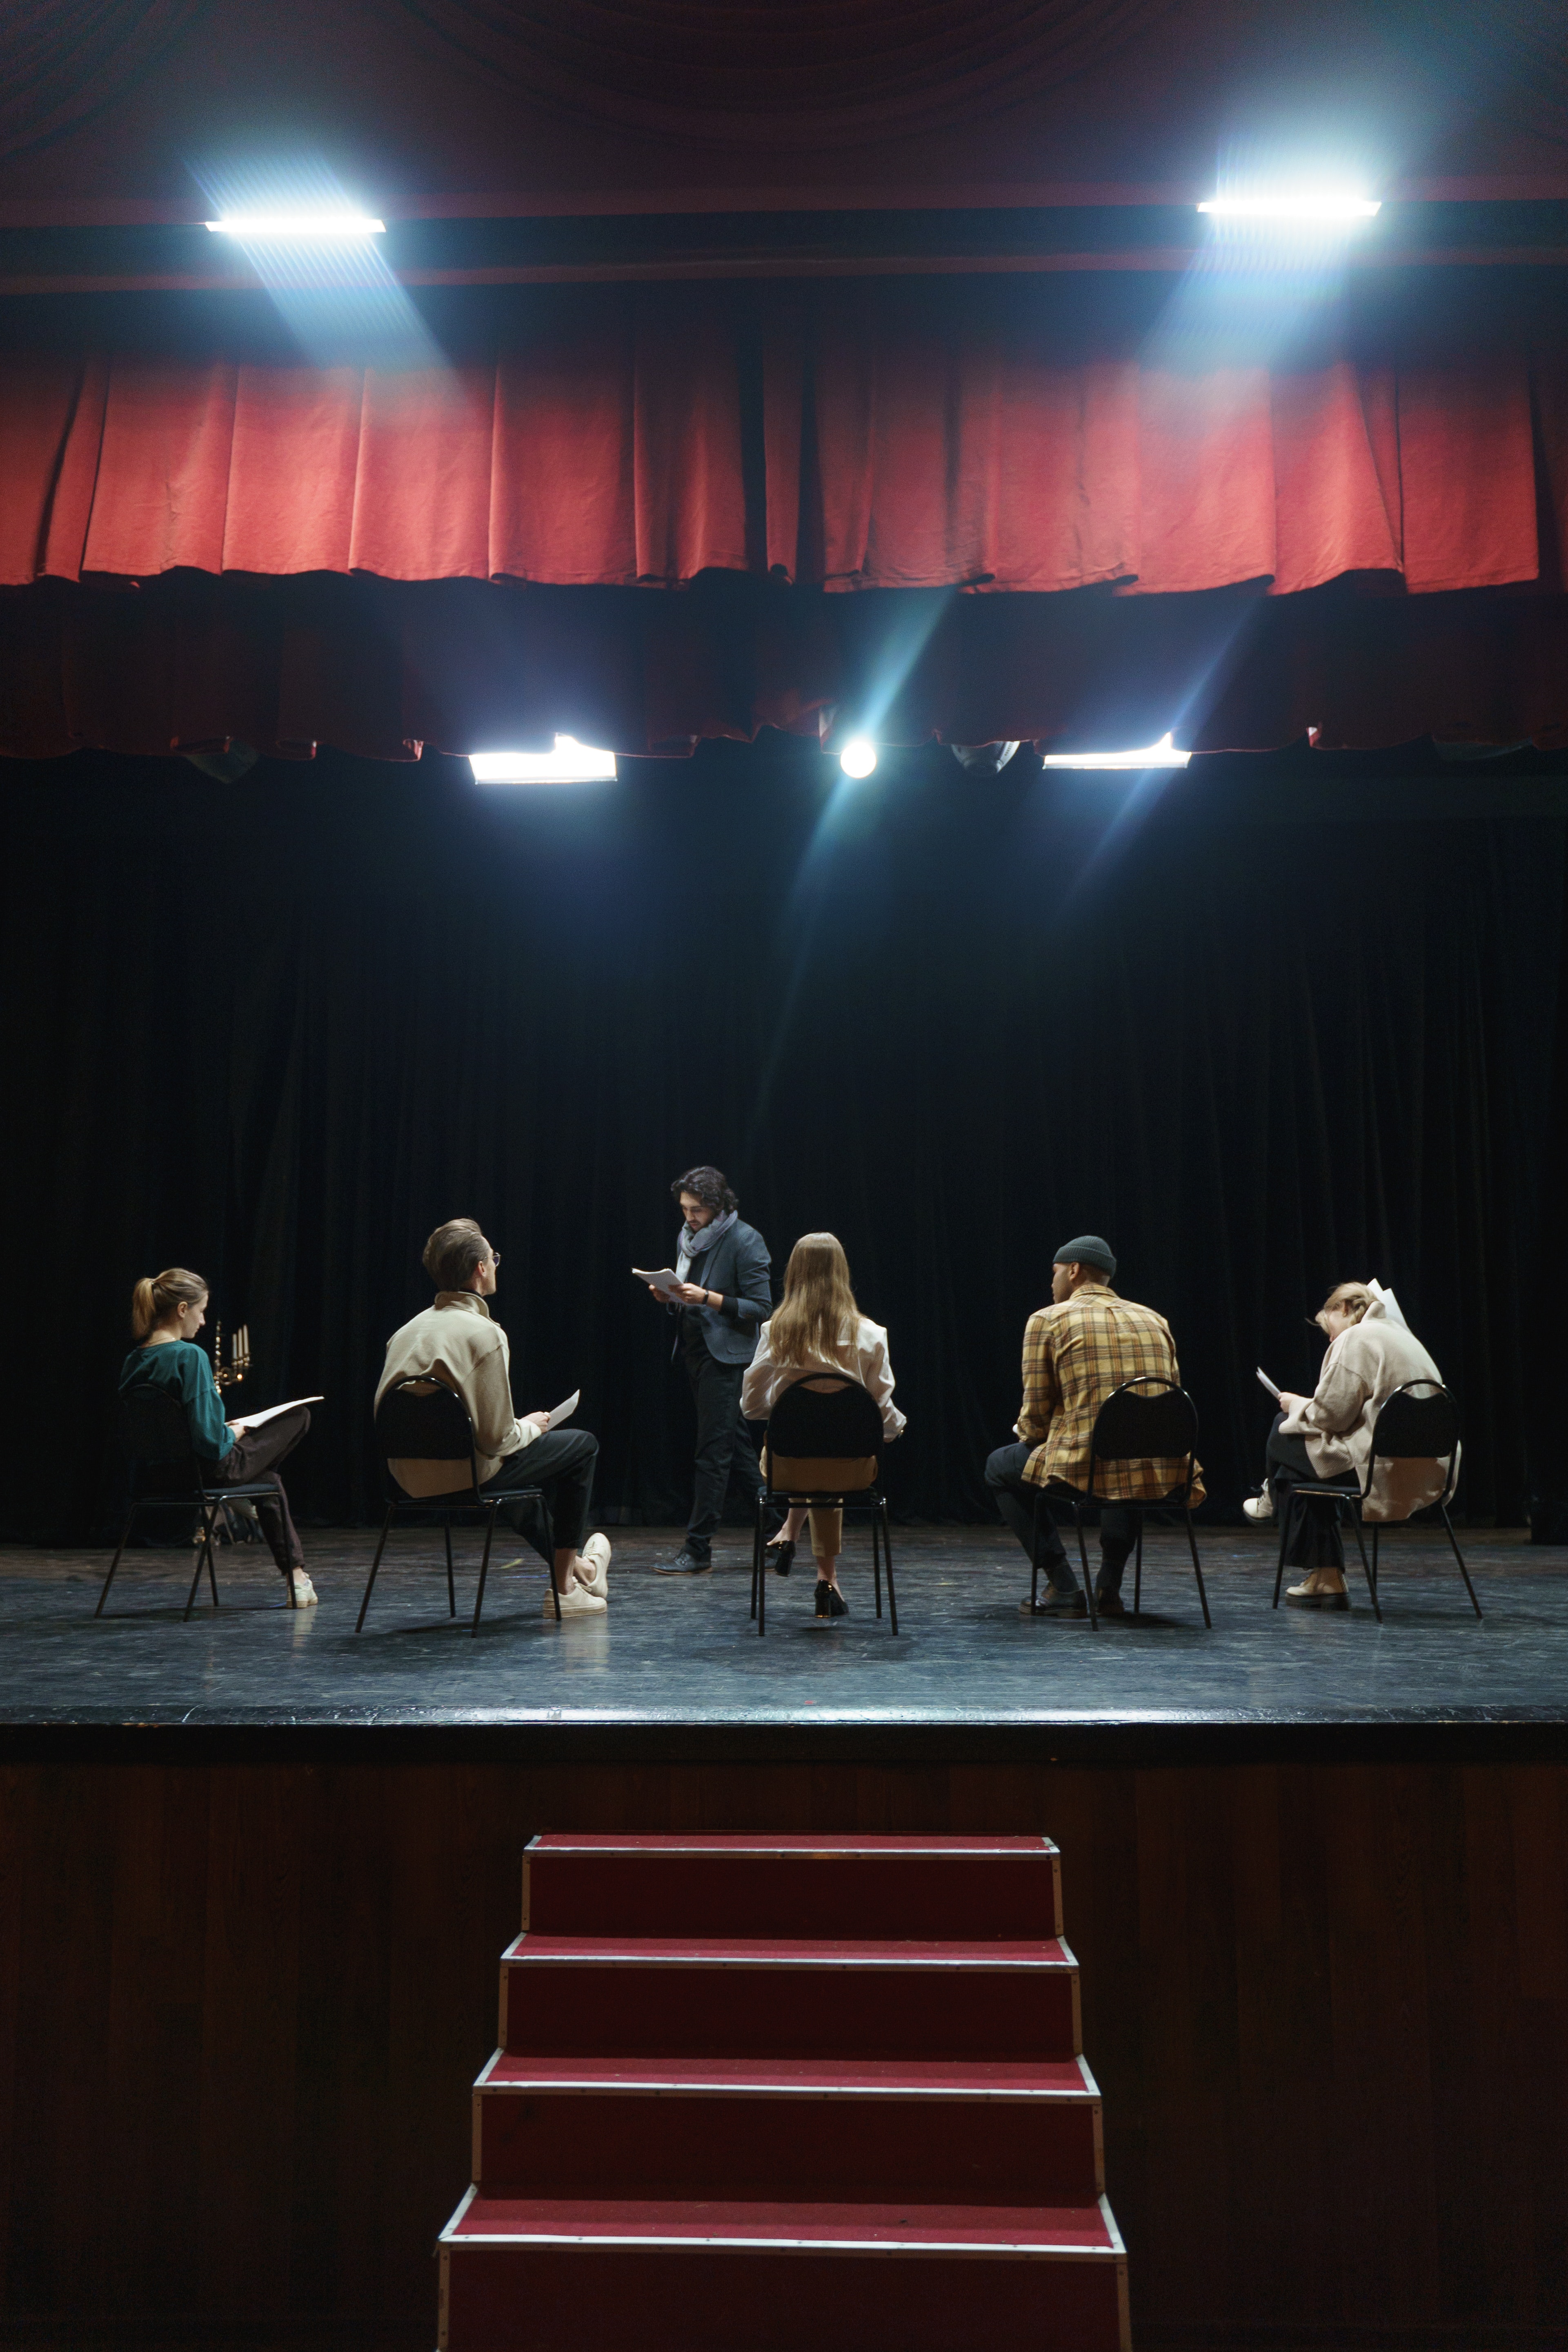 Joves sobre un escenari de teatre assajant. Font: Pexels -cottonbro studio